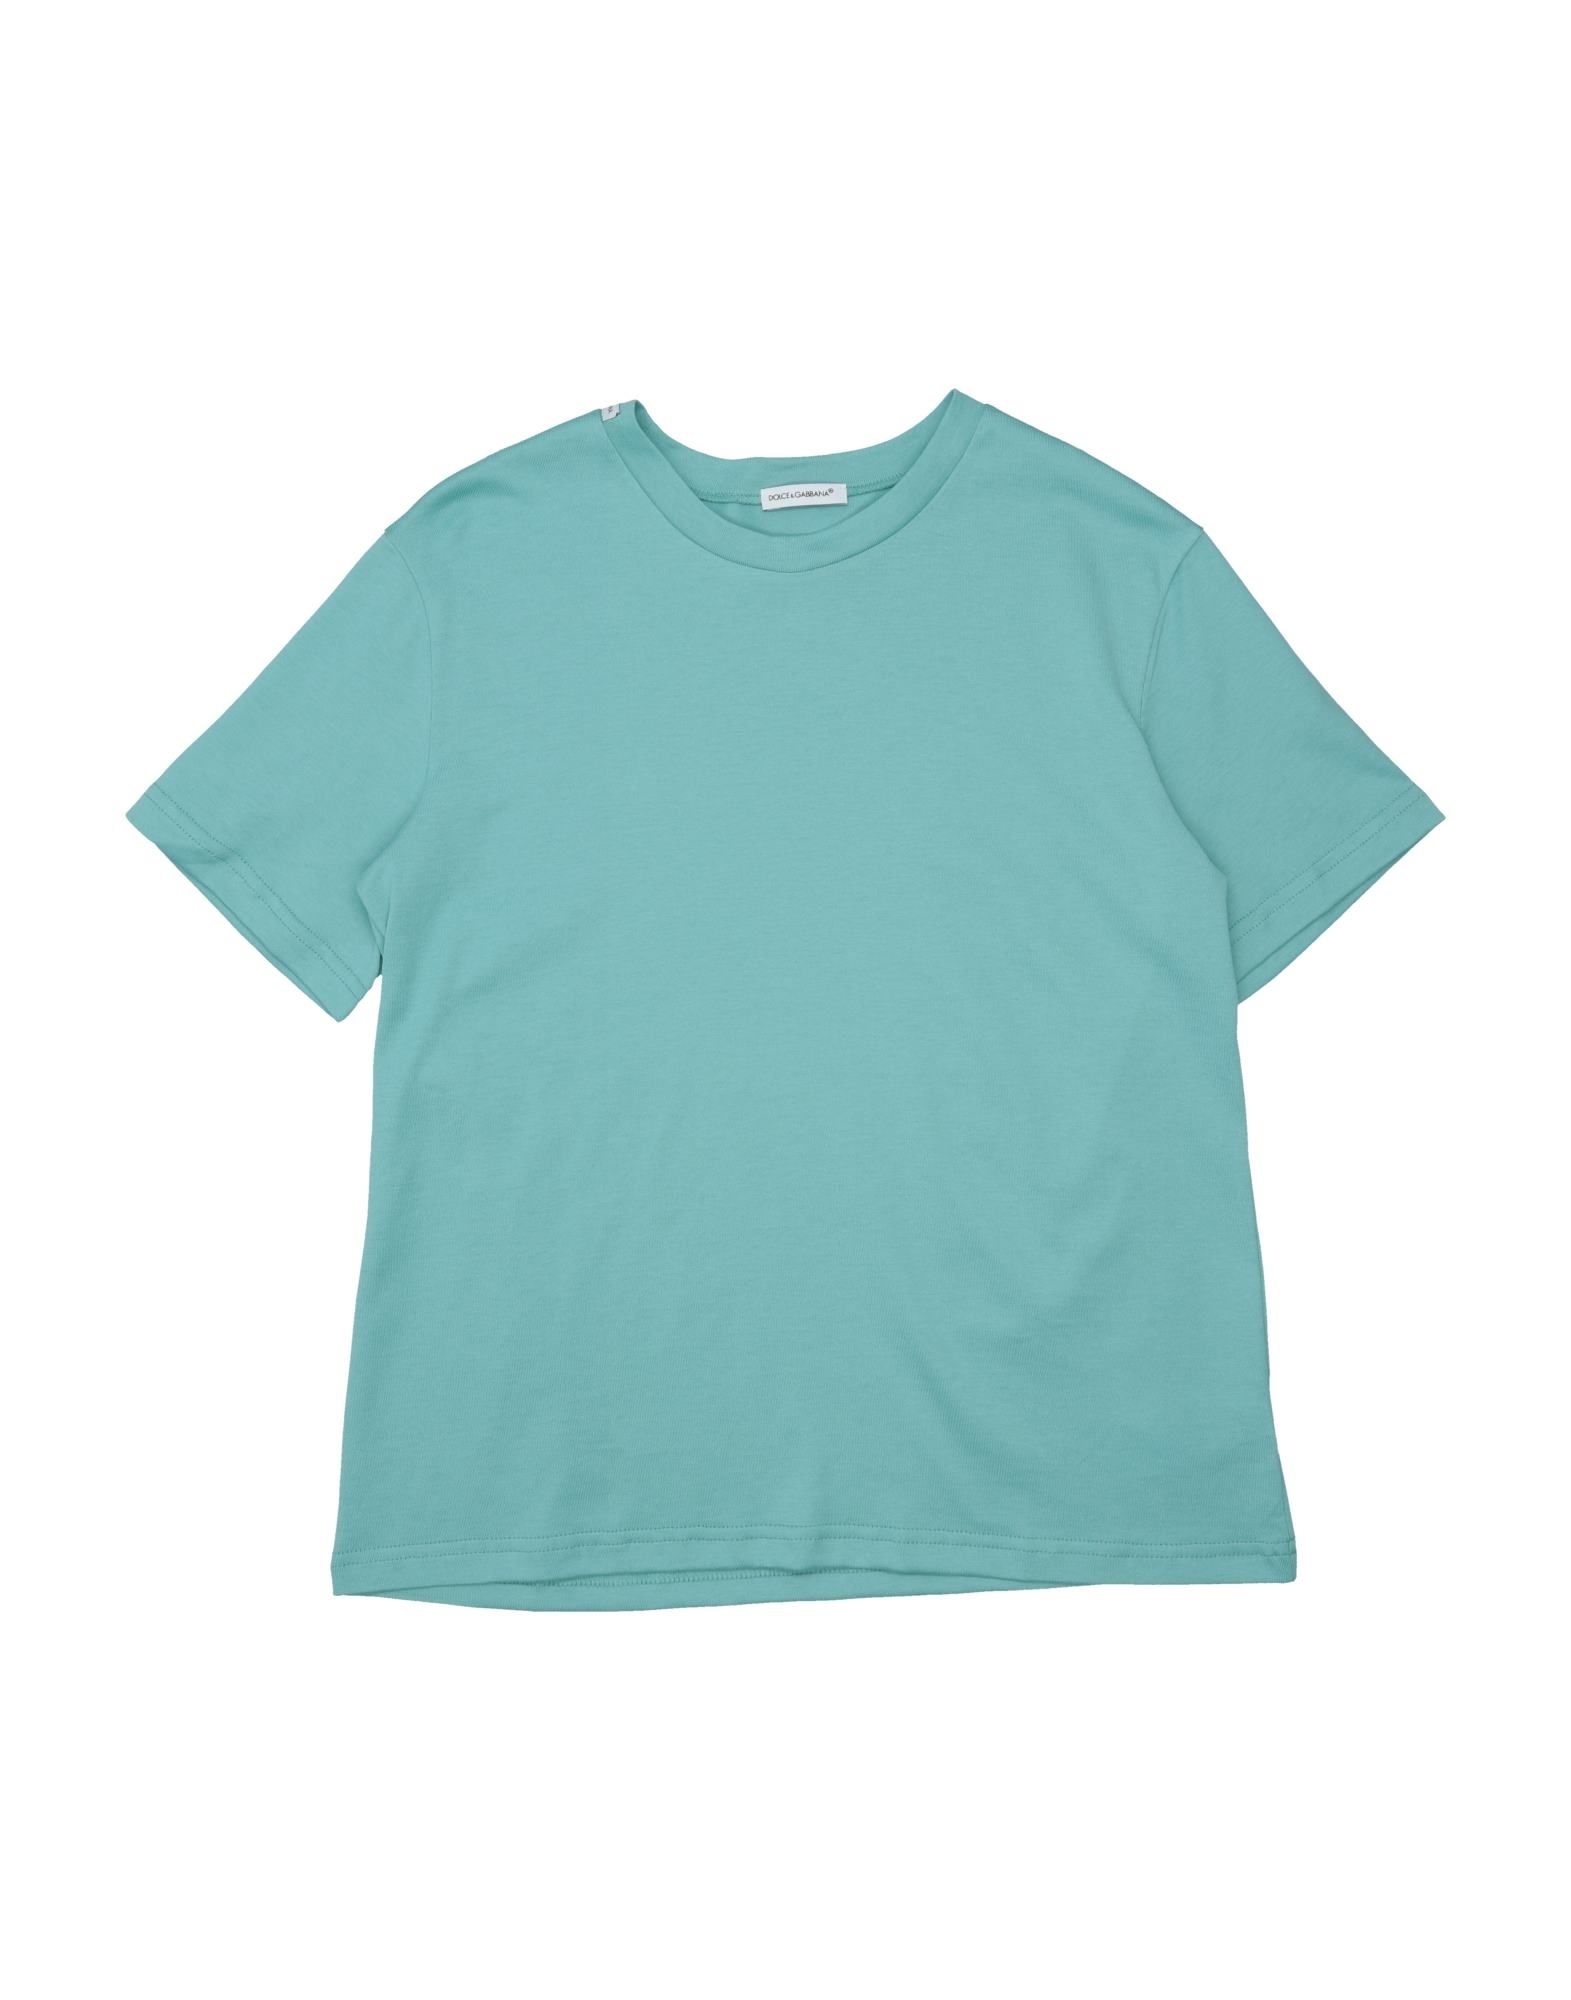 Dolce & Gabbana Kids' T-shirts In Green